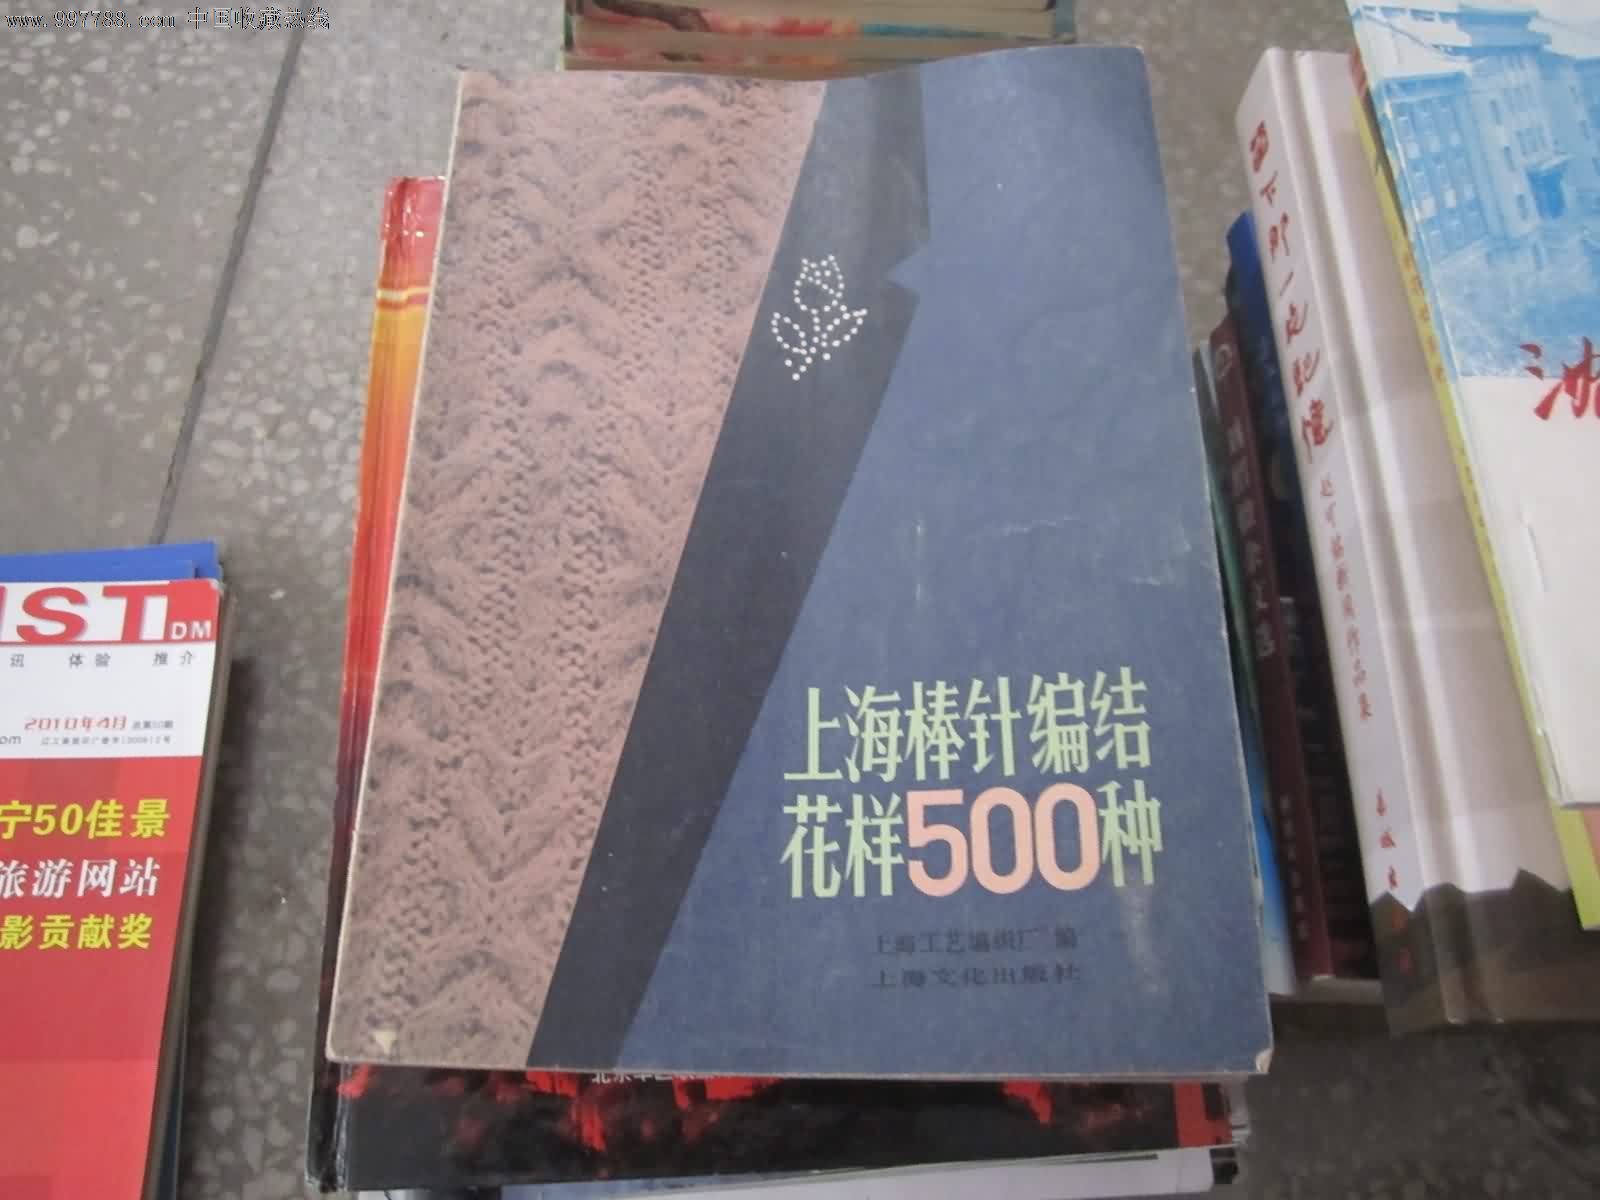 上海棒针编织花样500种-其他文字类旧书--se1